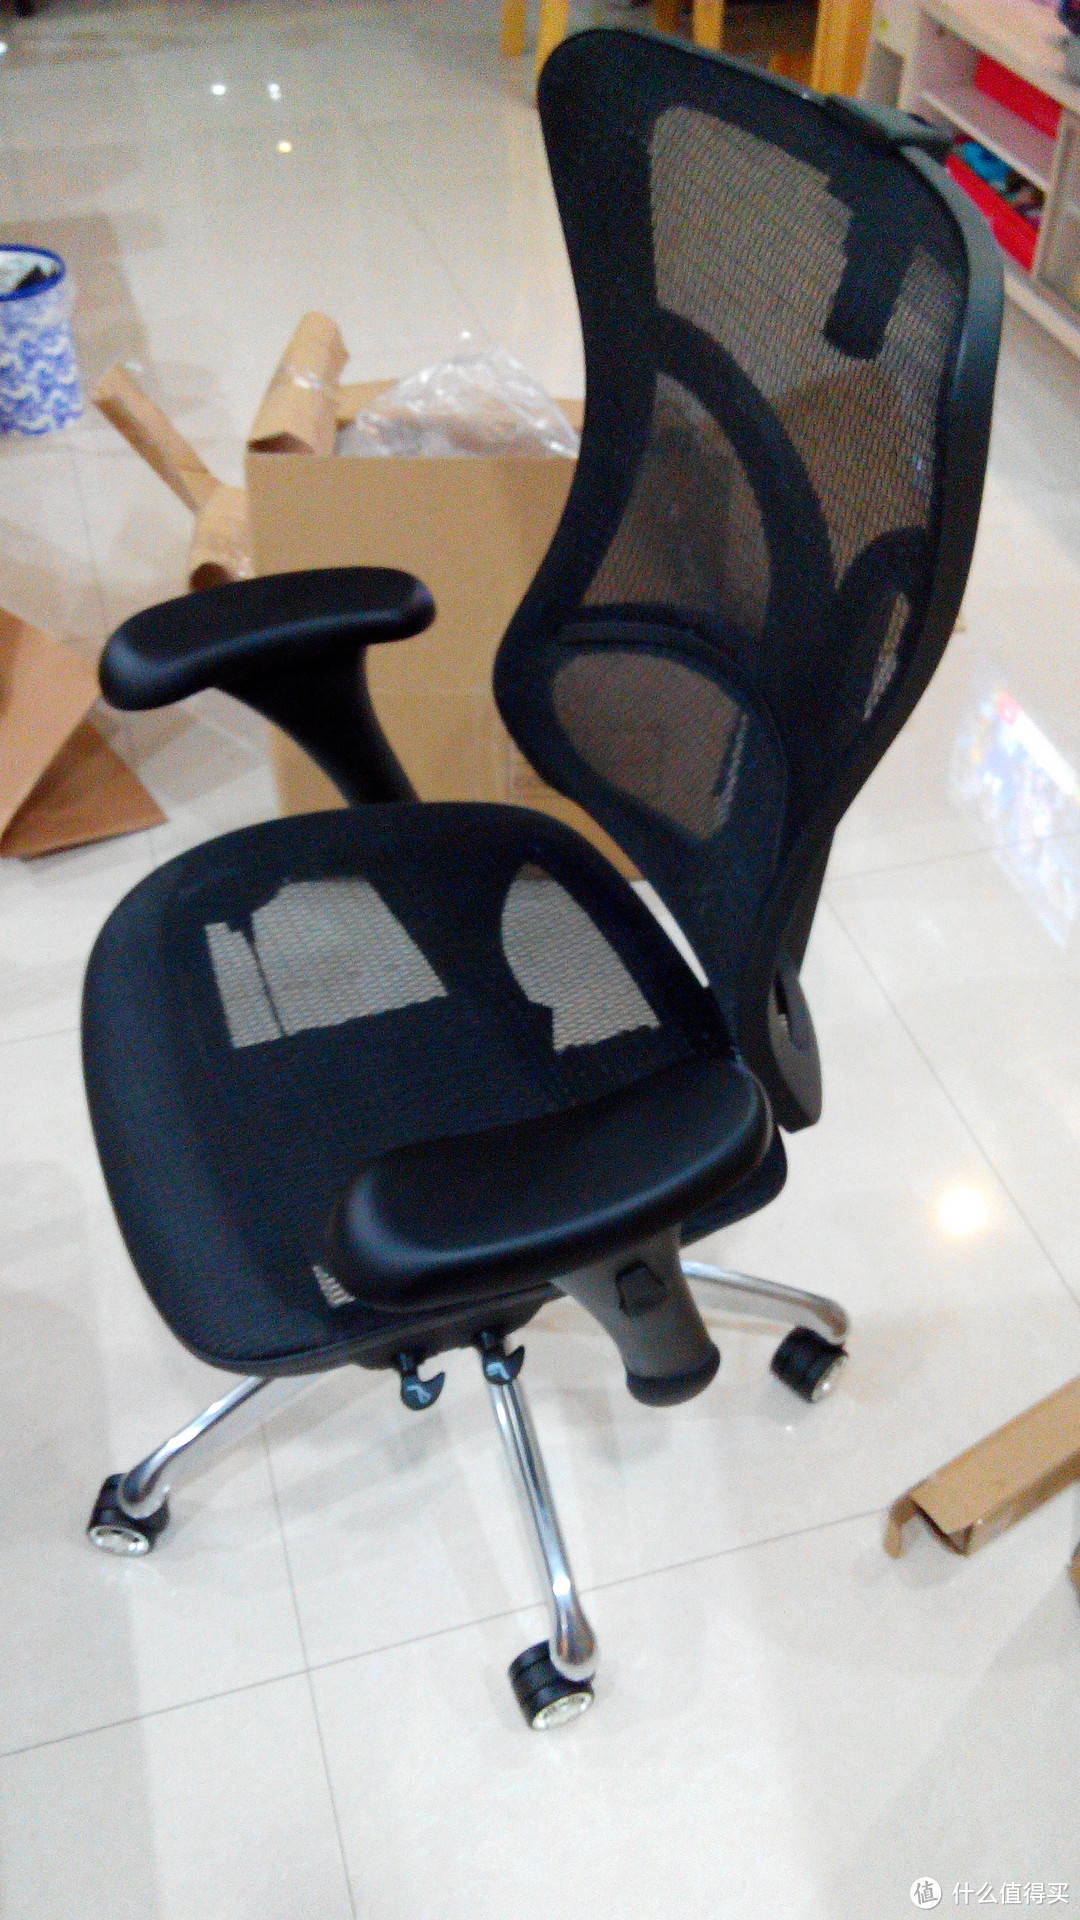 松林 SL-F8 人体工学椅